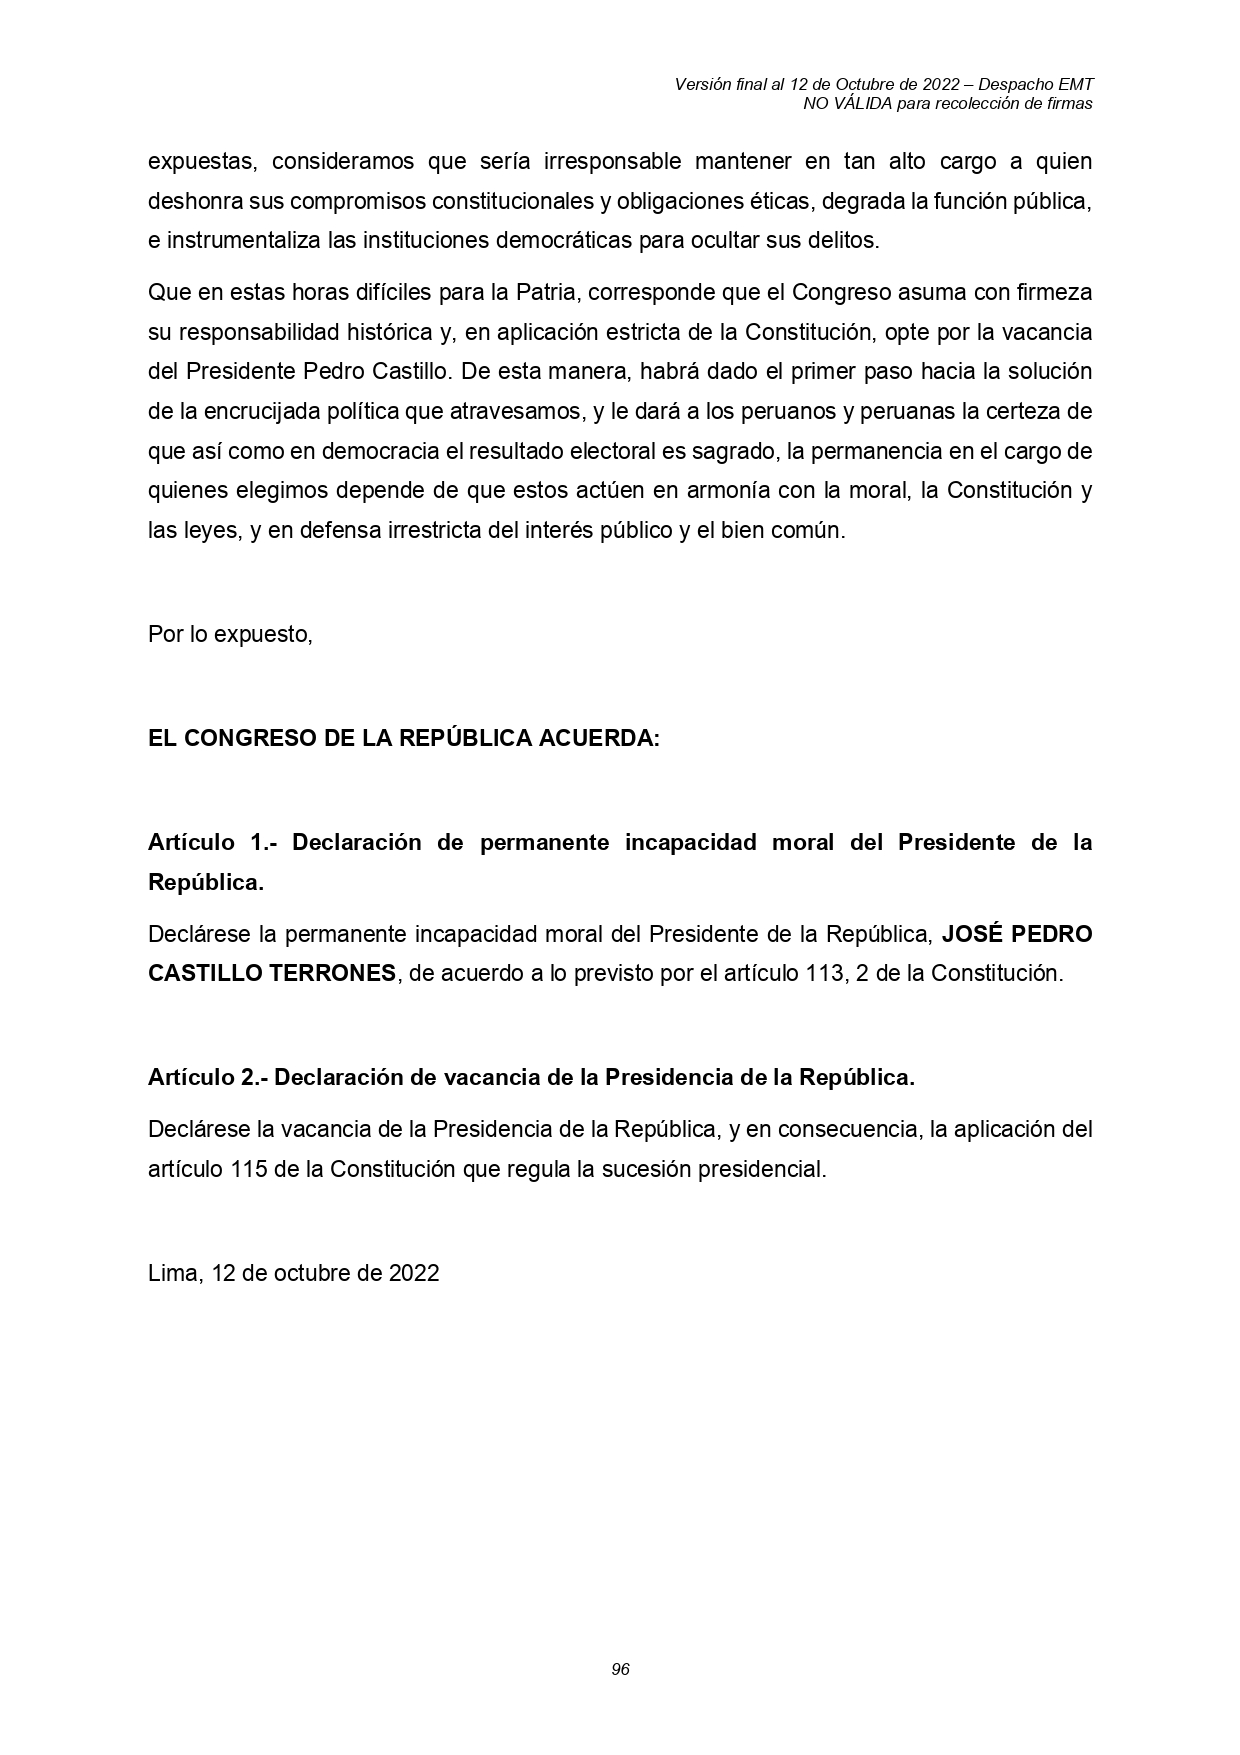 El legislador Edward Málaga recolectará firmas en el Congreso para vacar por incapacidad moral al presidente Castillo.